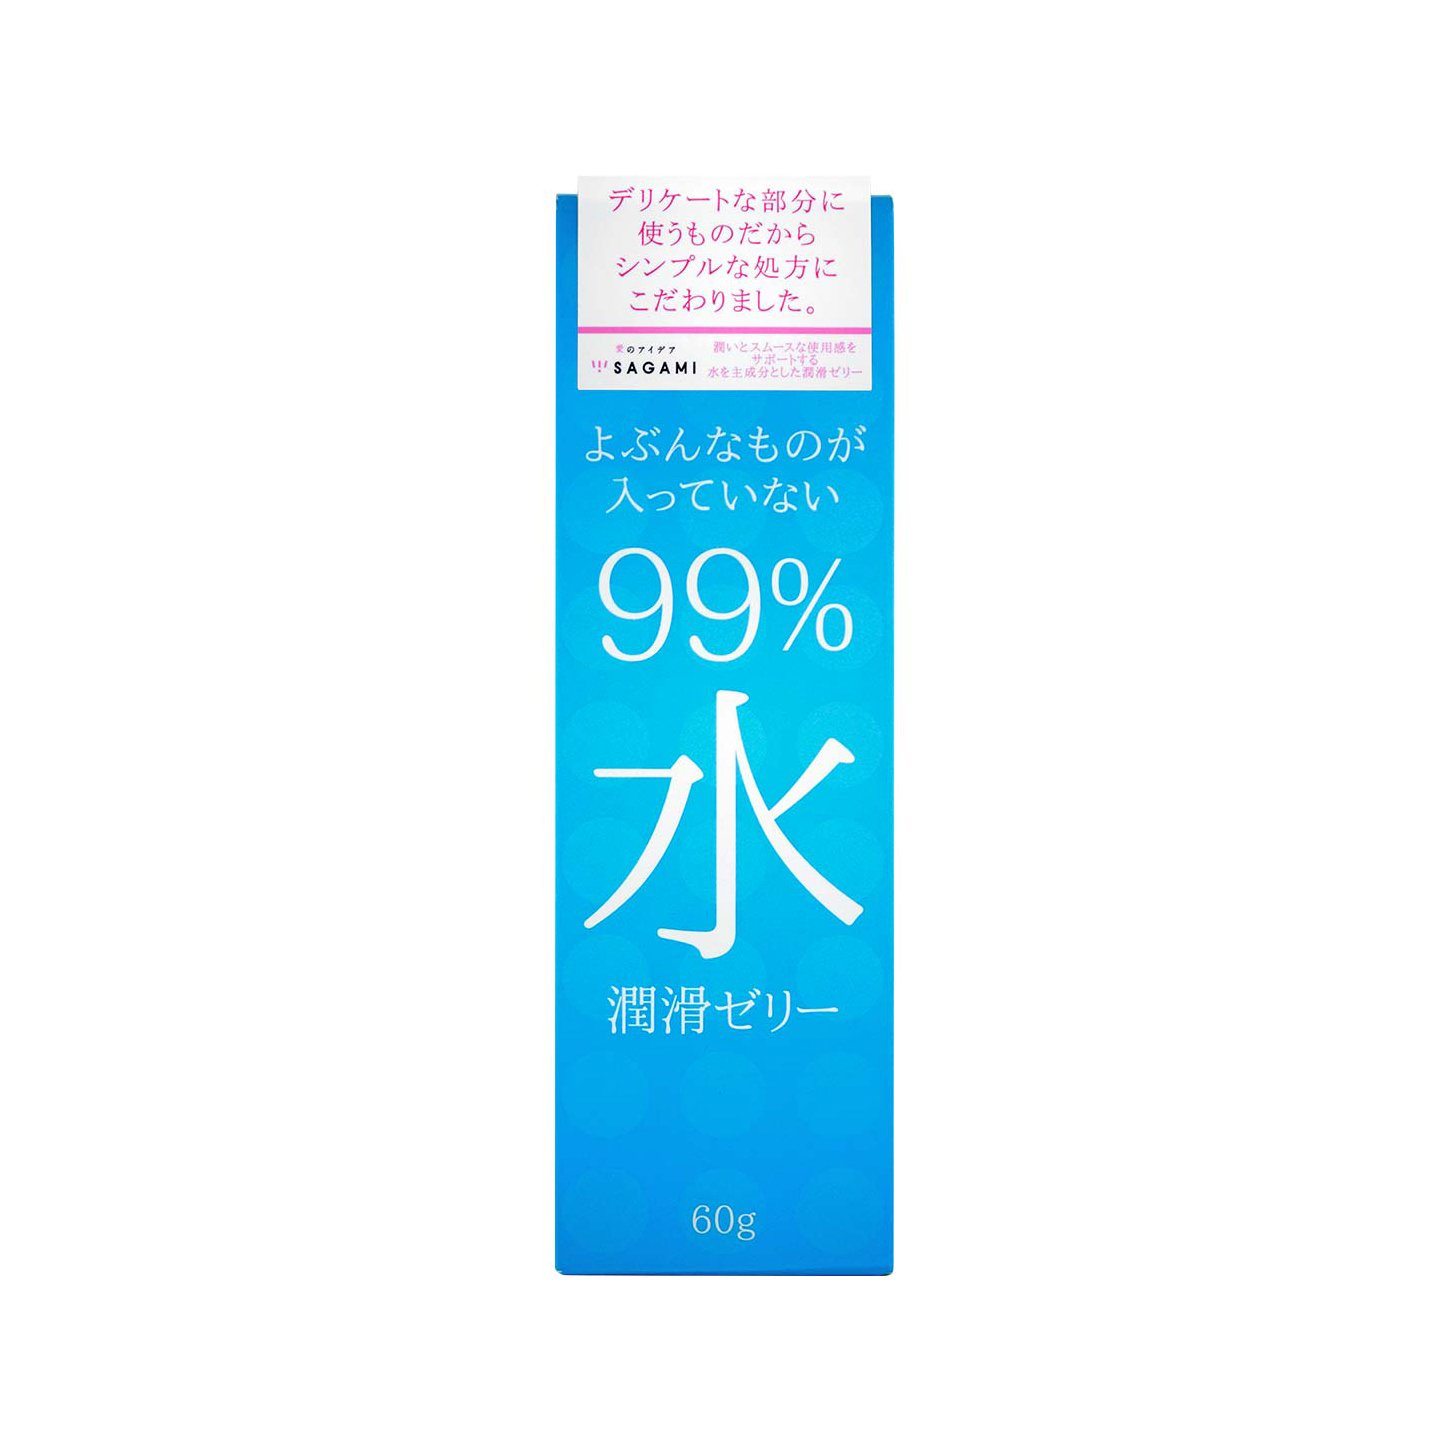 SAGAMI 99% 水潤型潤滑液 60 毫升 潤滑液 購買